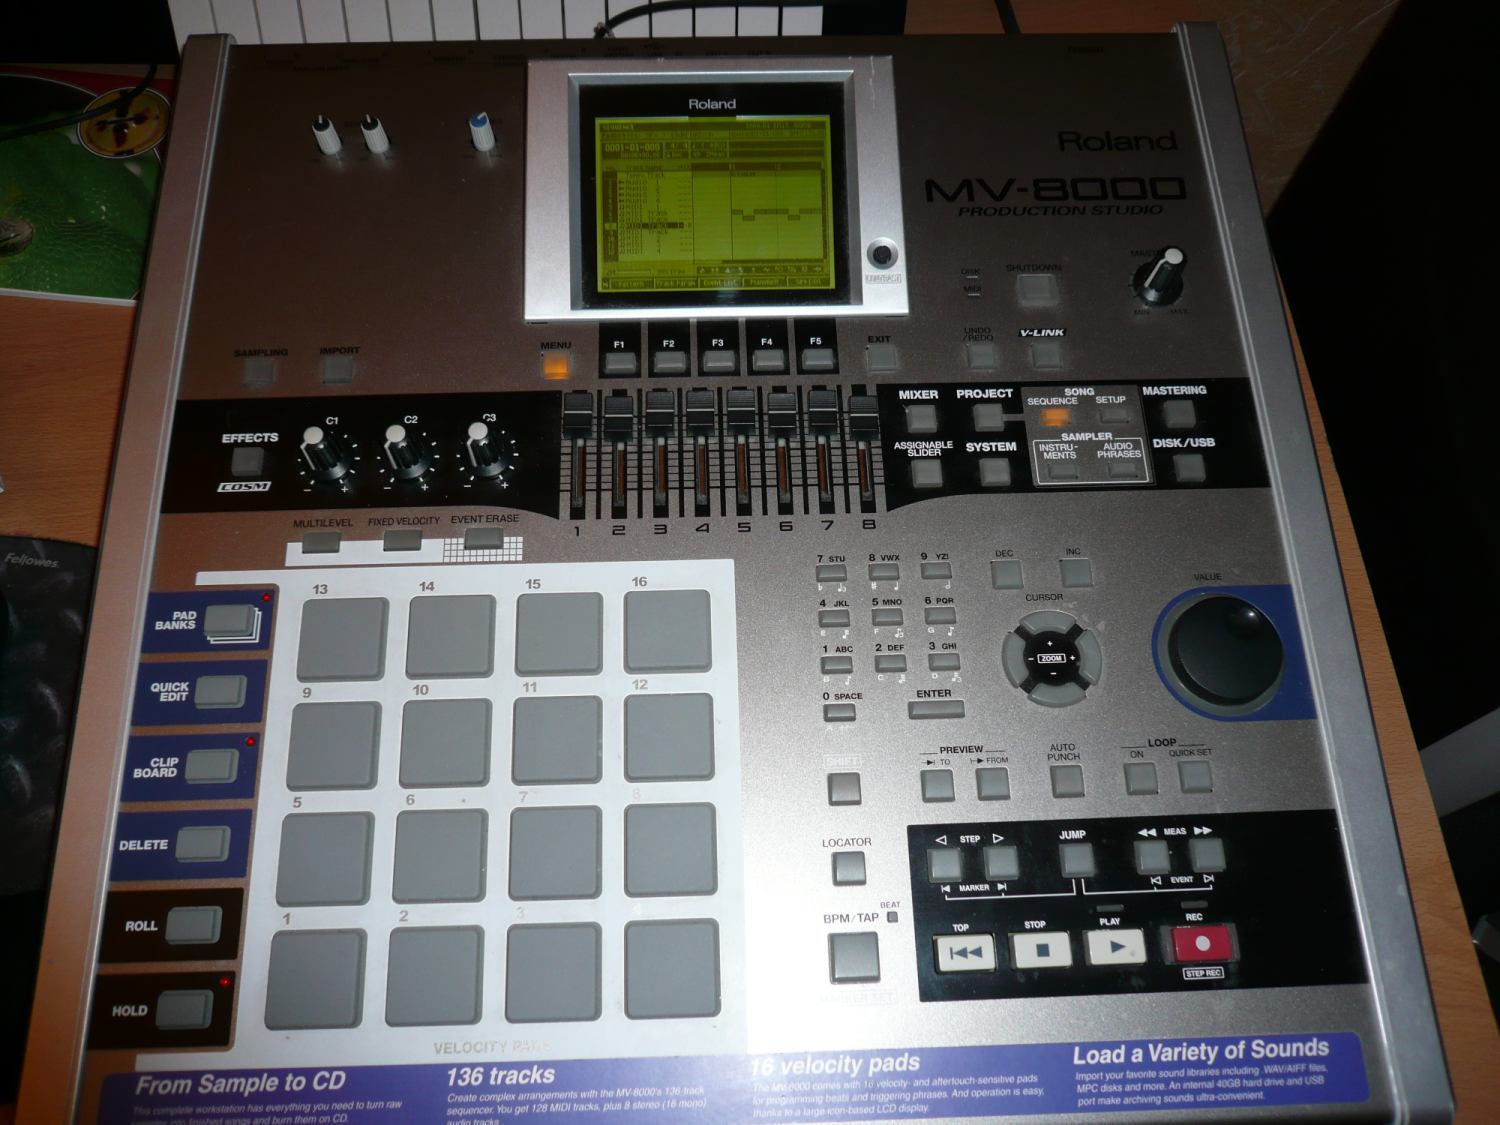 Roland MV-8000 image (#66061) - Audiofanzine